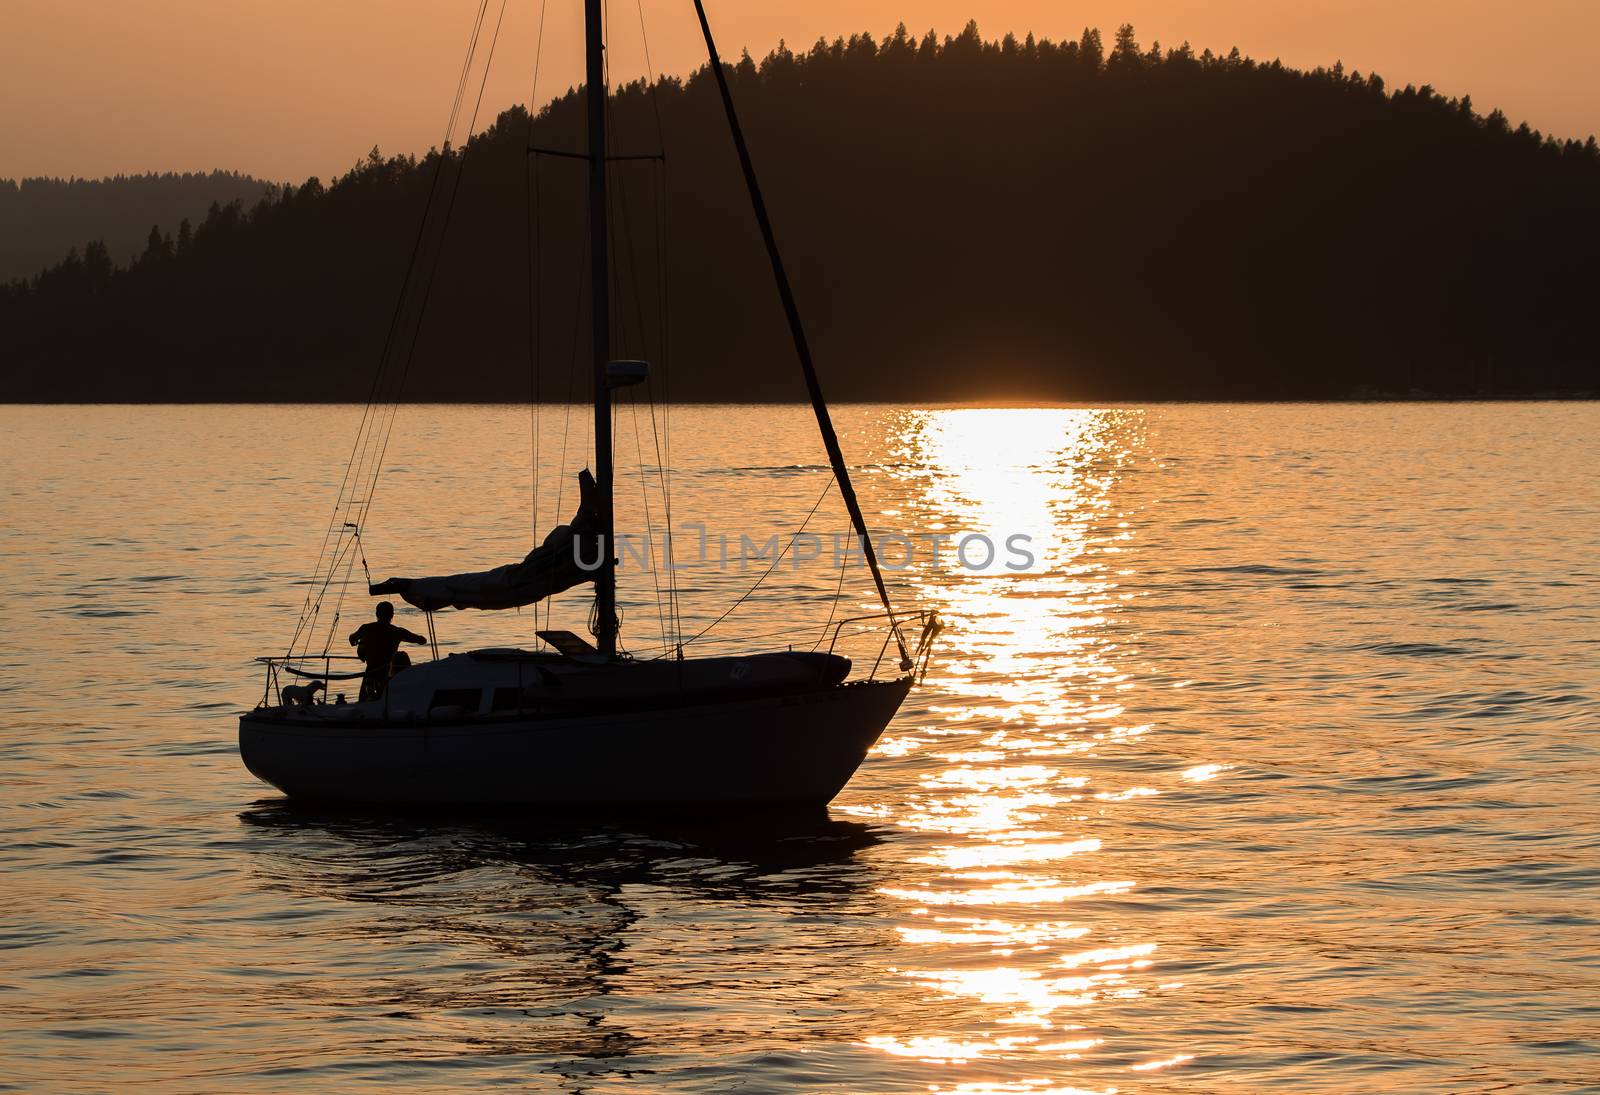 Sailing Lake Coeur d'Alene at Sunset by teacherdad48@yahoo.com